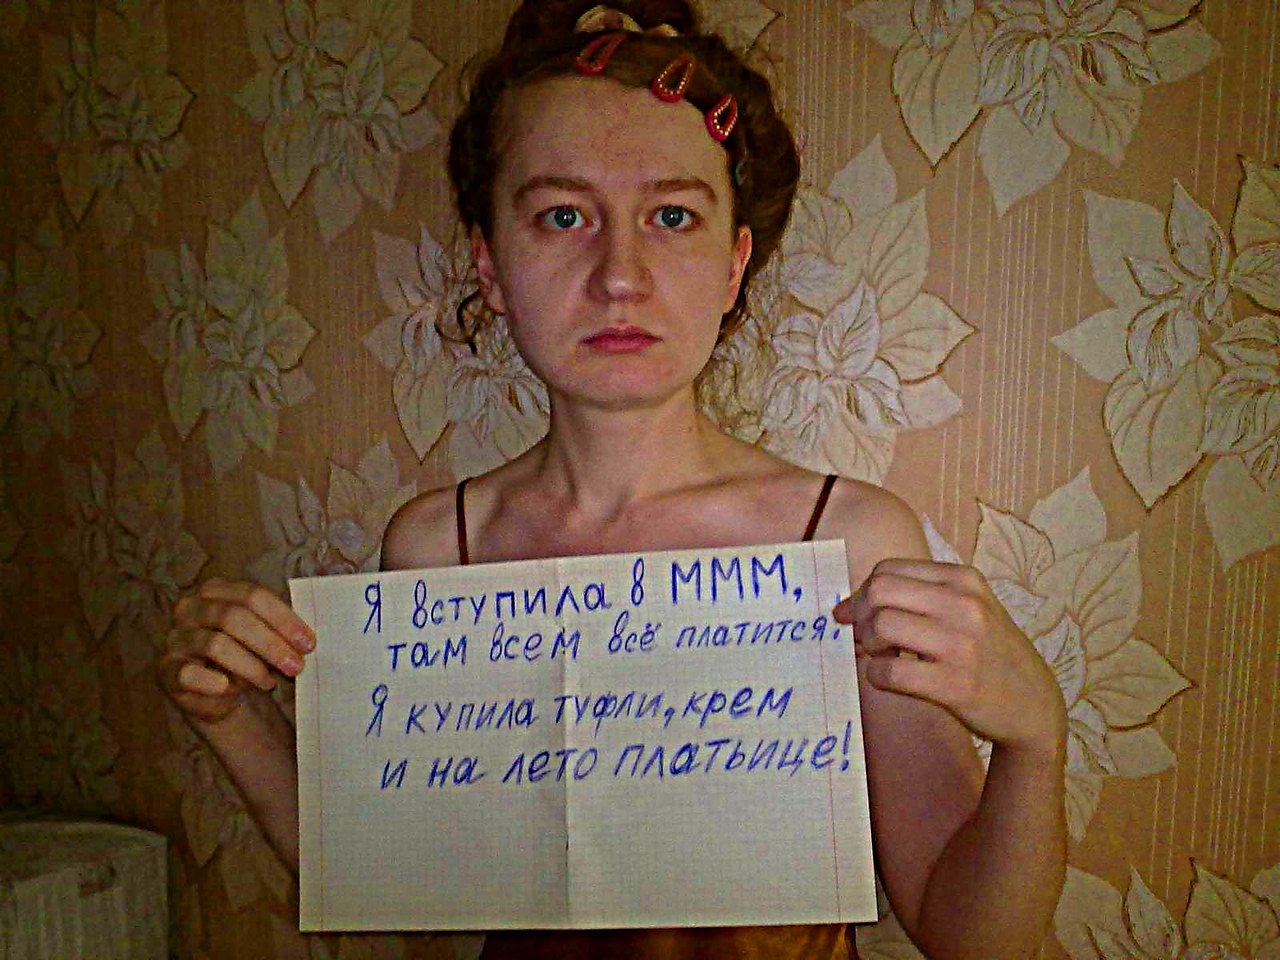 Где Найти Проститутку В Москве Не Фейк